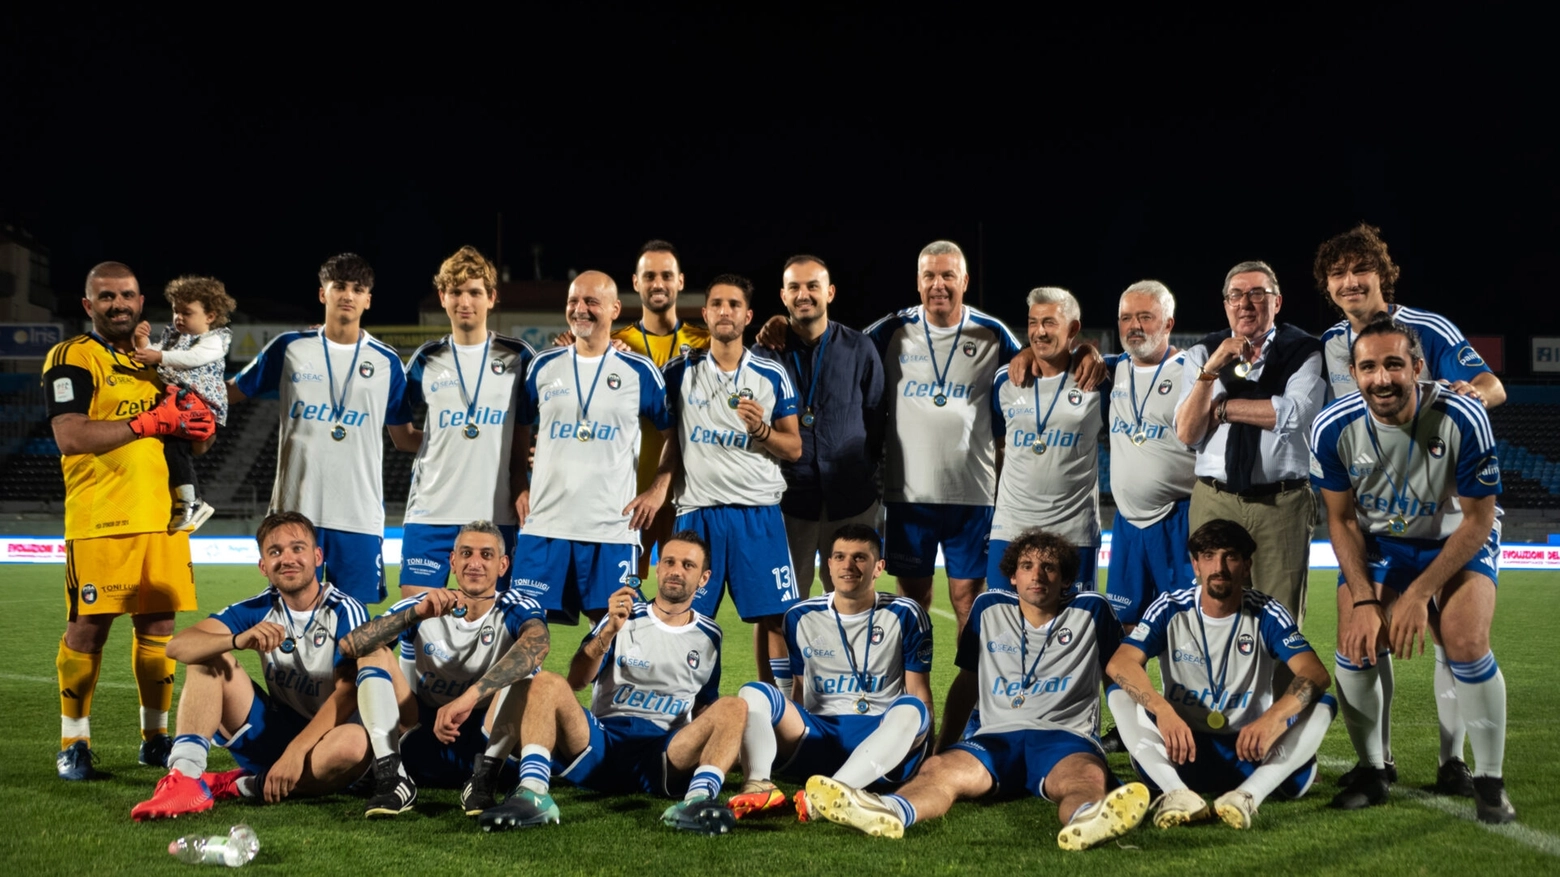 il tradizionale torneo calcistico dedicato dal Pisa Sporting Club a tutti i partners